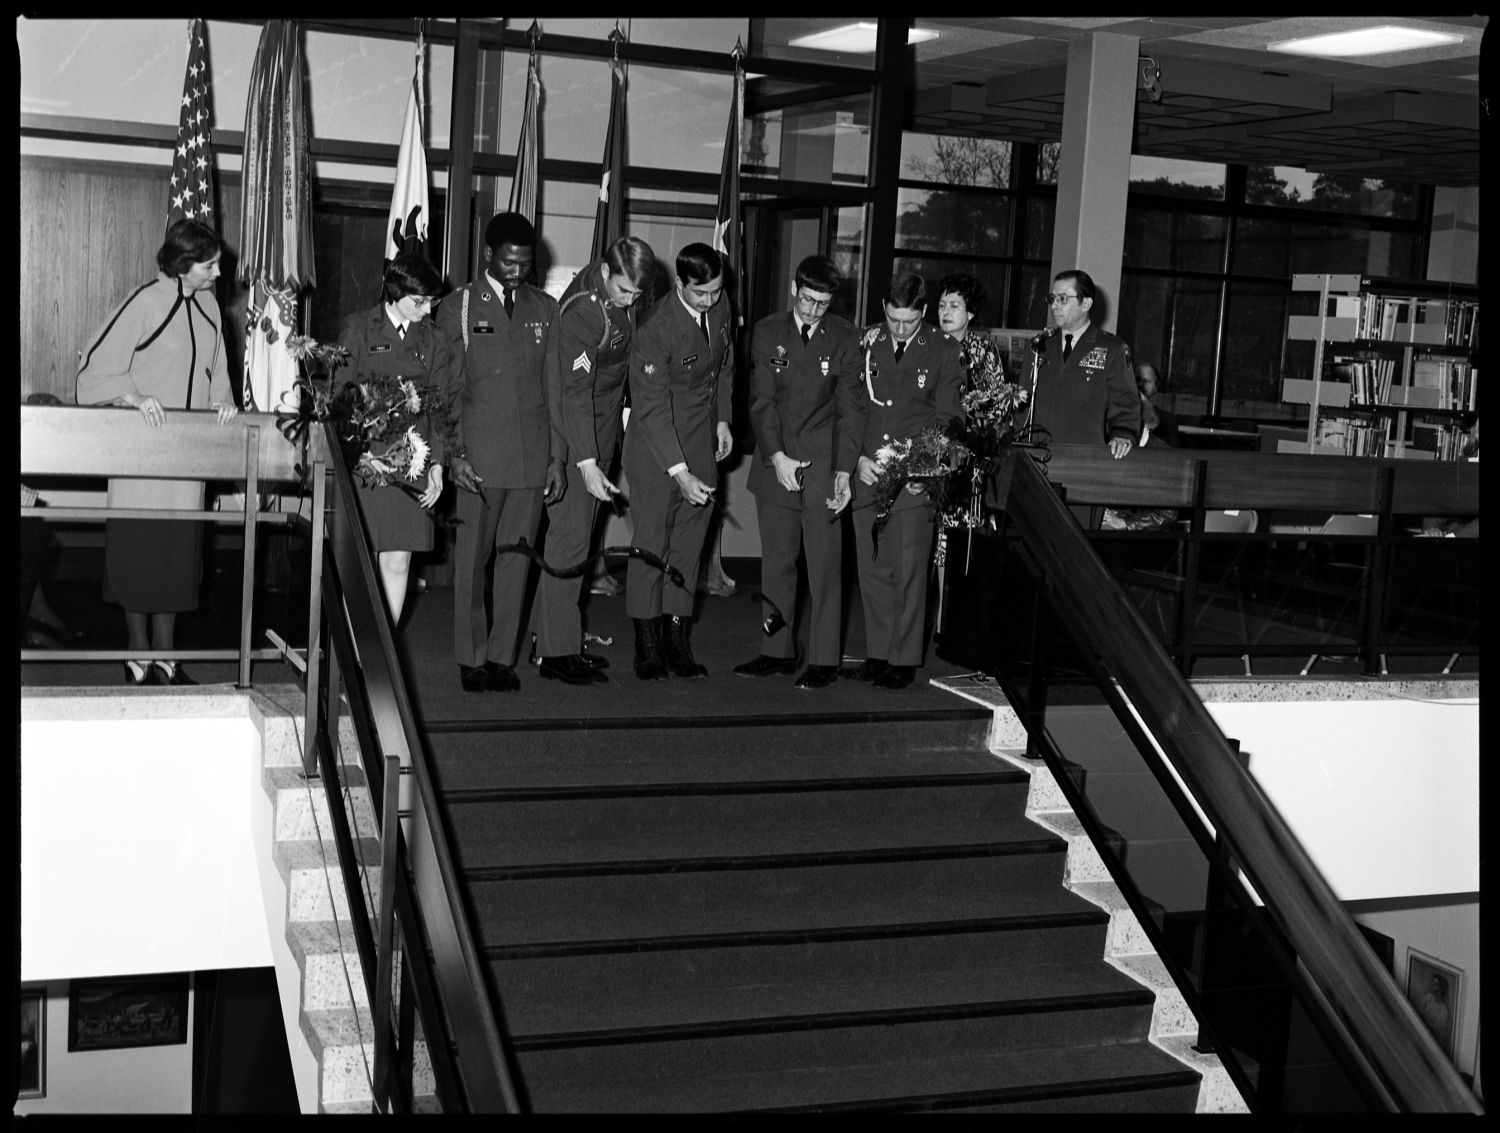 s/w-Fotografie: Eröffnung der Bibliothek der U.S. Army Berlin Brigade  in der Taylorstraße in Berlin-Dahlem (AlliiertenMuseum/U.S. Army Photograph Public Domain Mark)